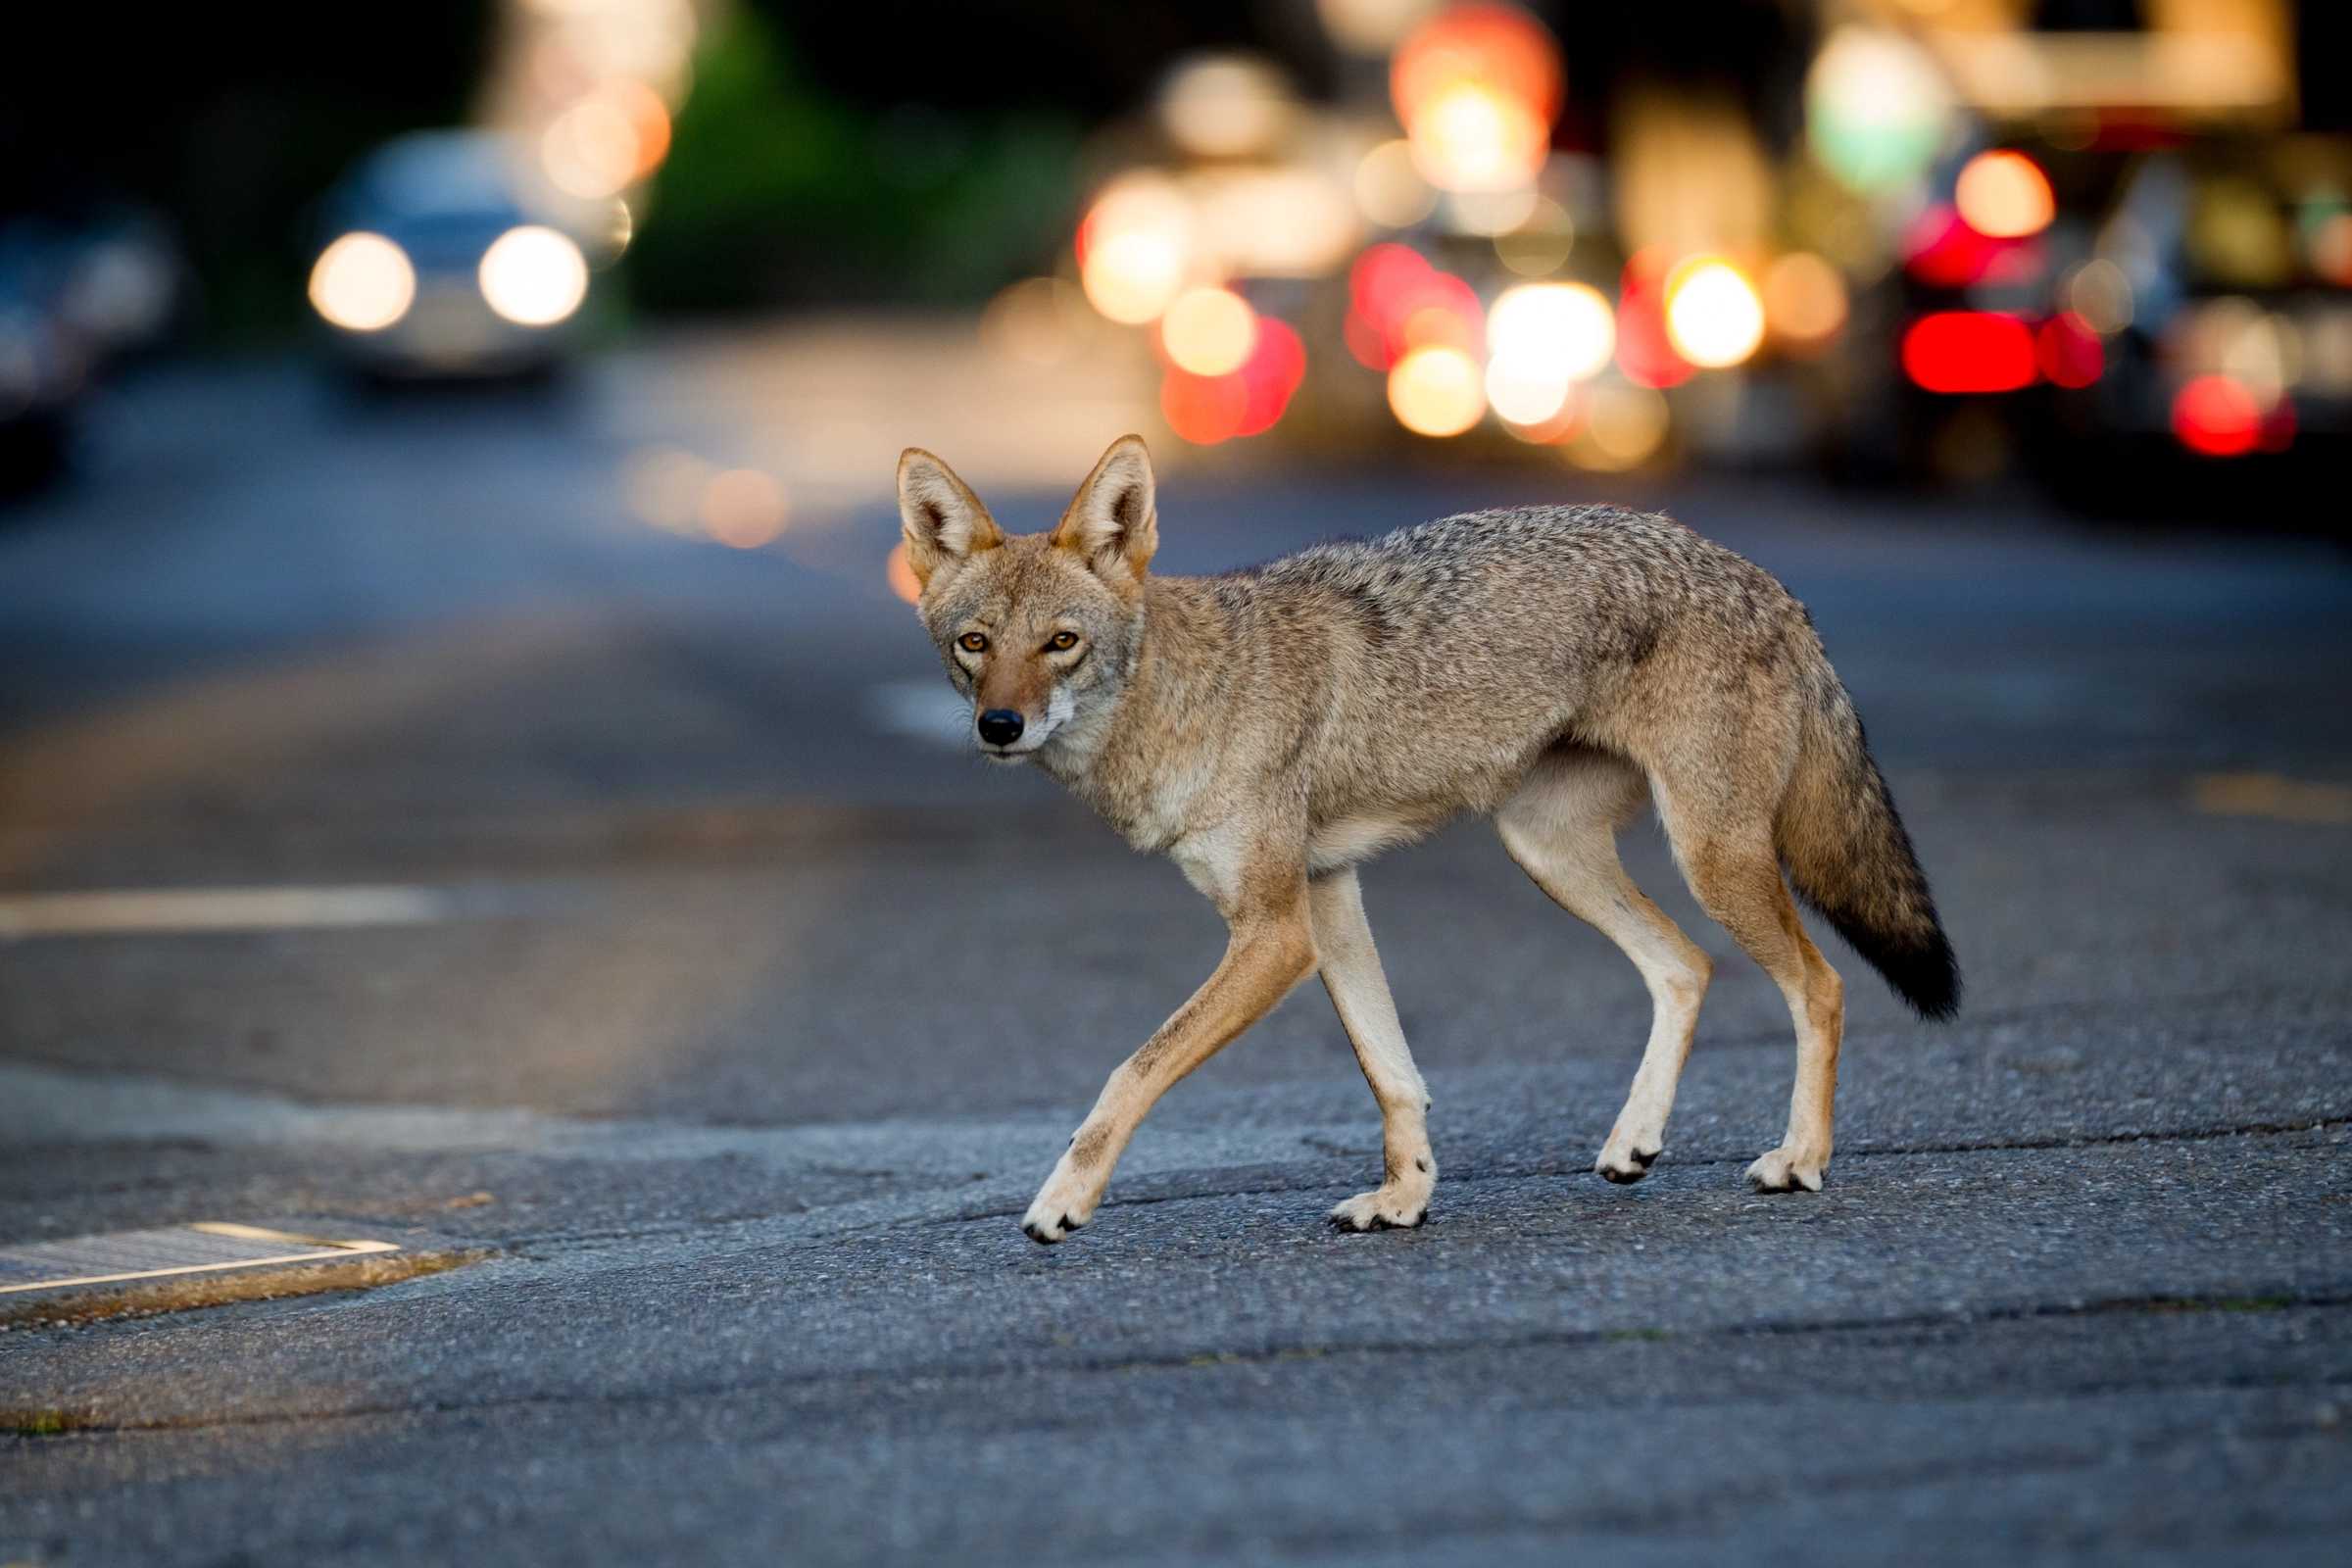 В Нью-Йорке койотам не приходится полагаться на человеческие отходы